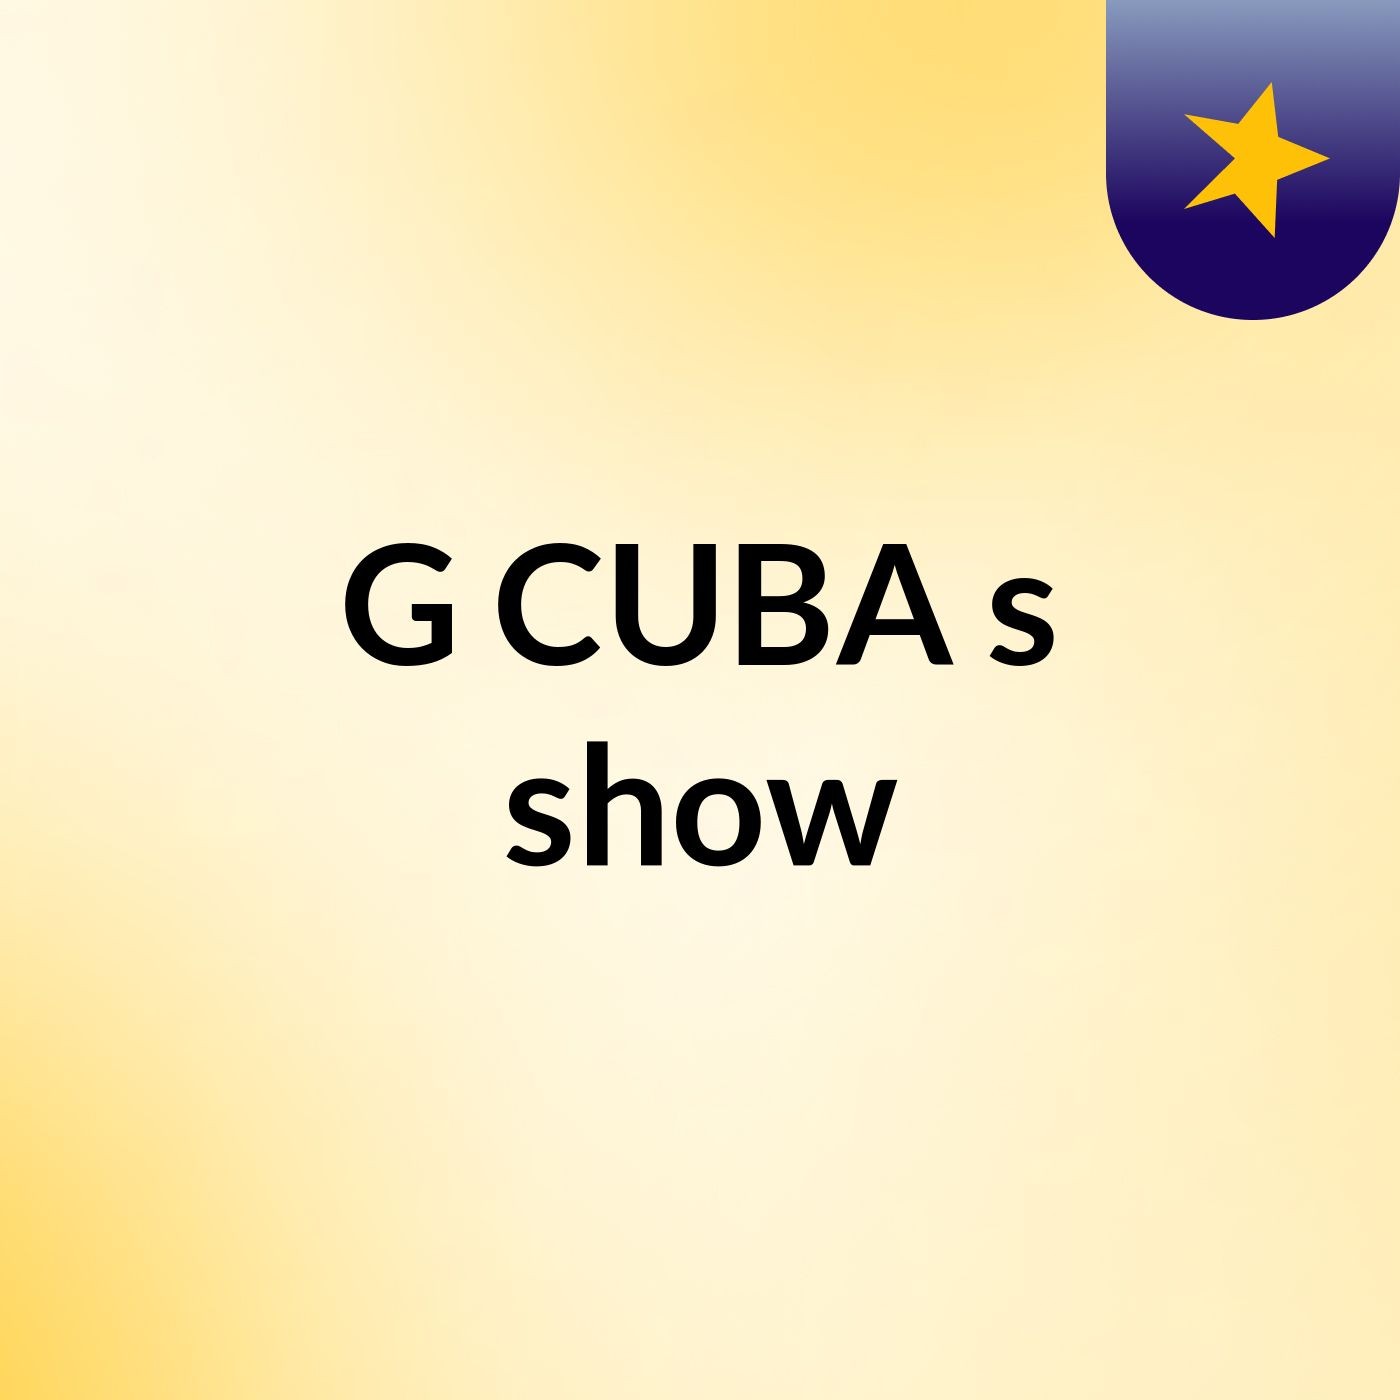 G CUBA's show